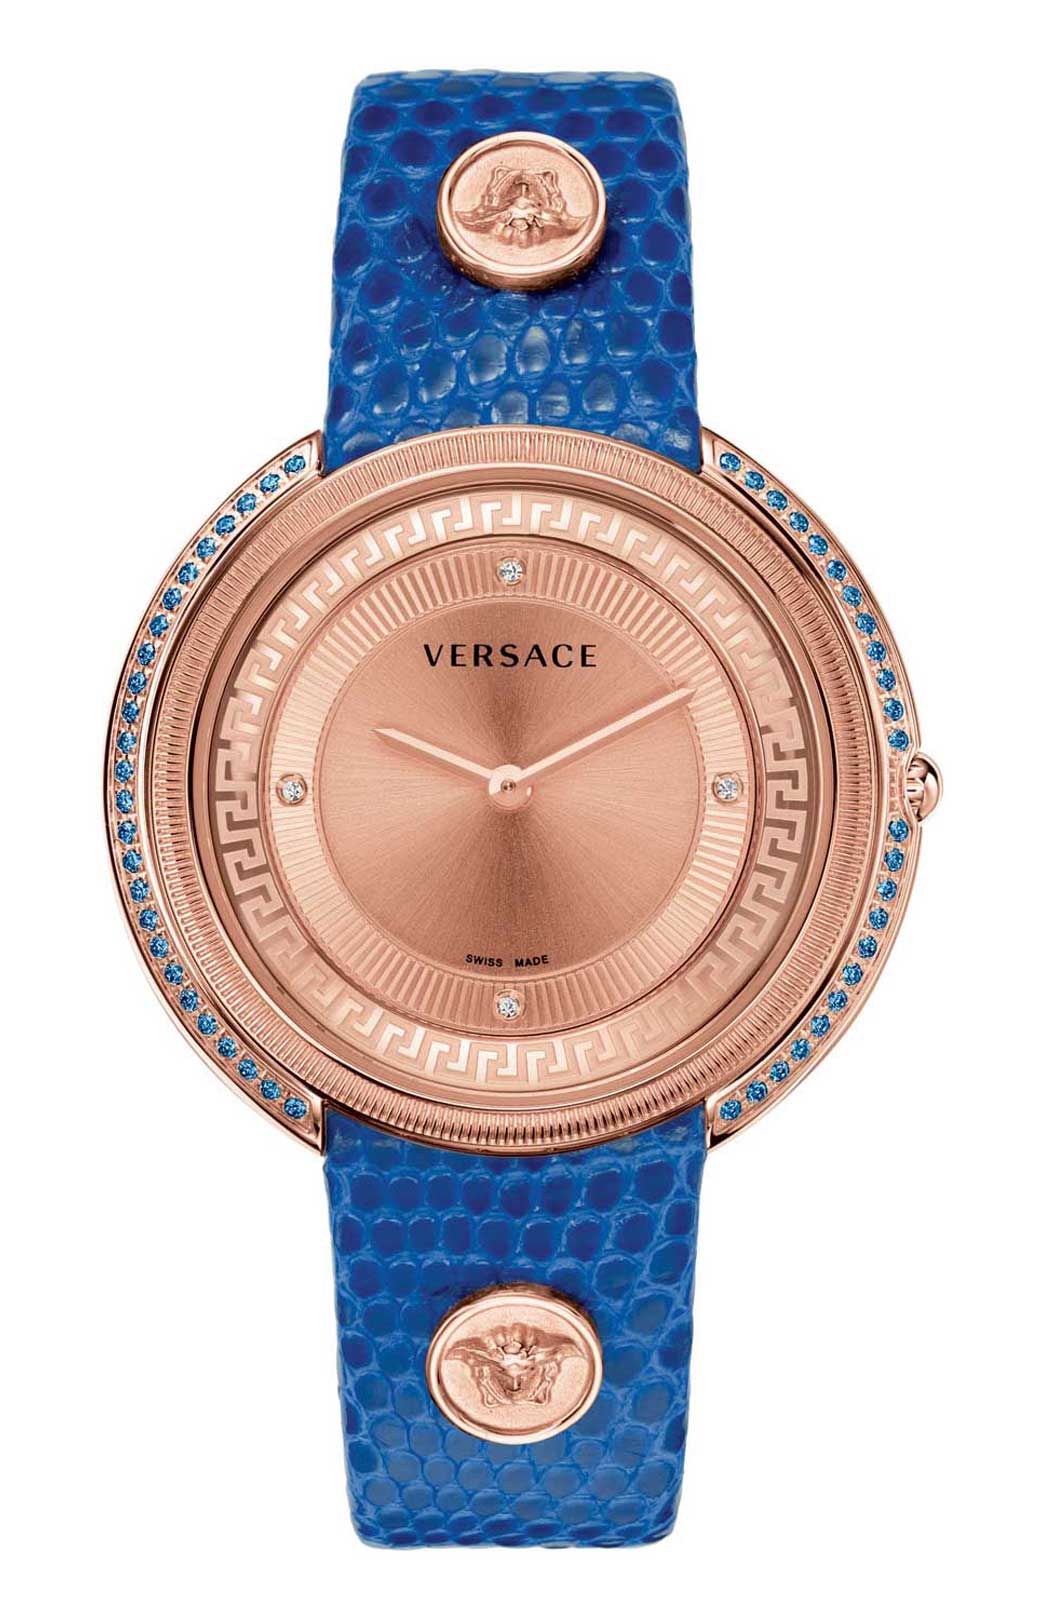 Versace QUARTZ watch 762 BLUE SAPPHIRES GOLDEN DIAL